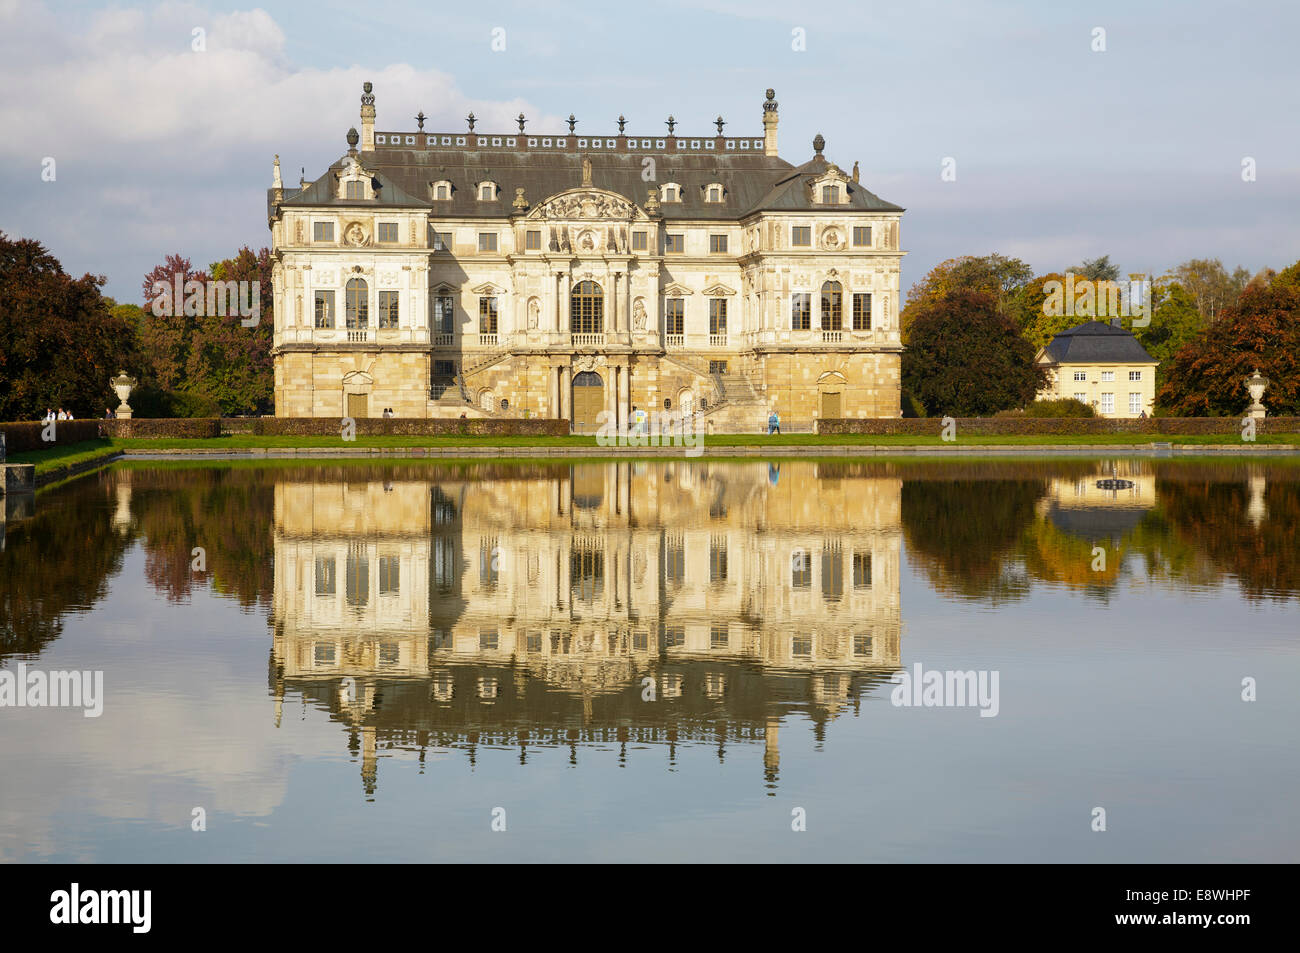 Palace dans le Grossen Jardin, Dresde, Saxe, Allemagne Banque D'Images